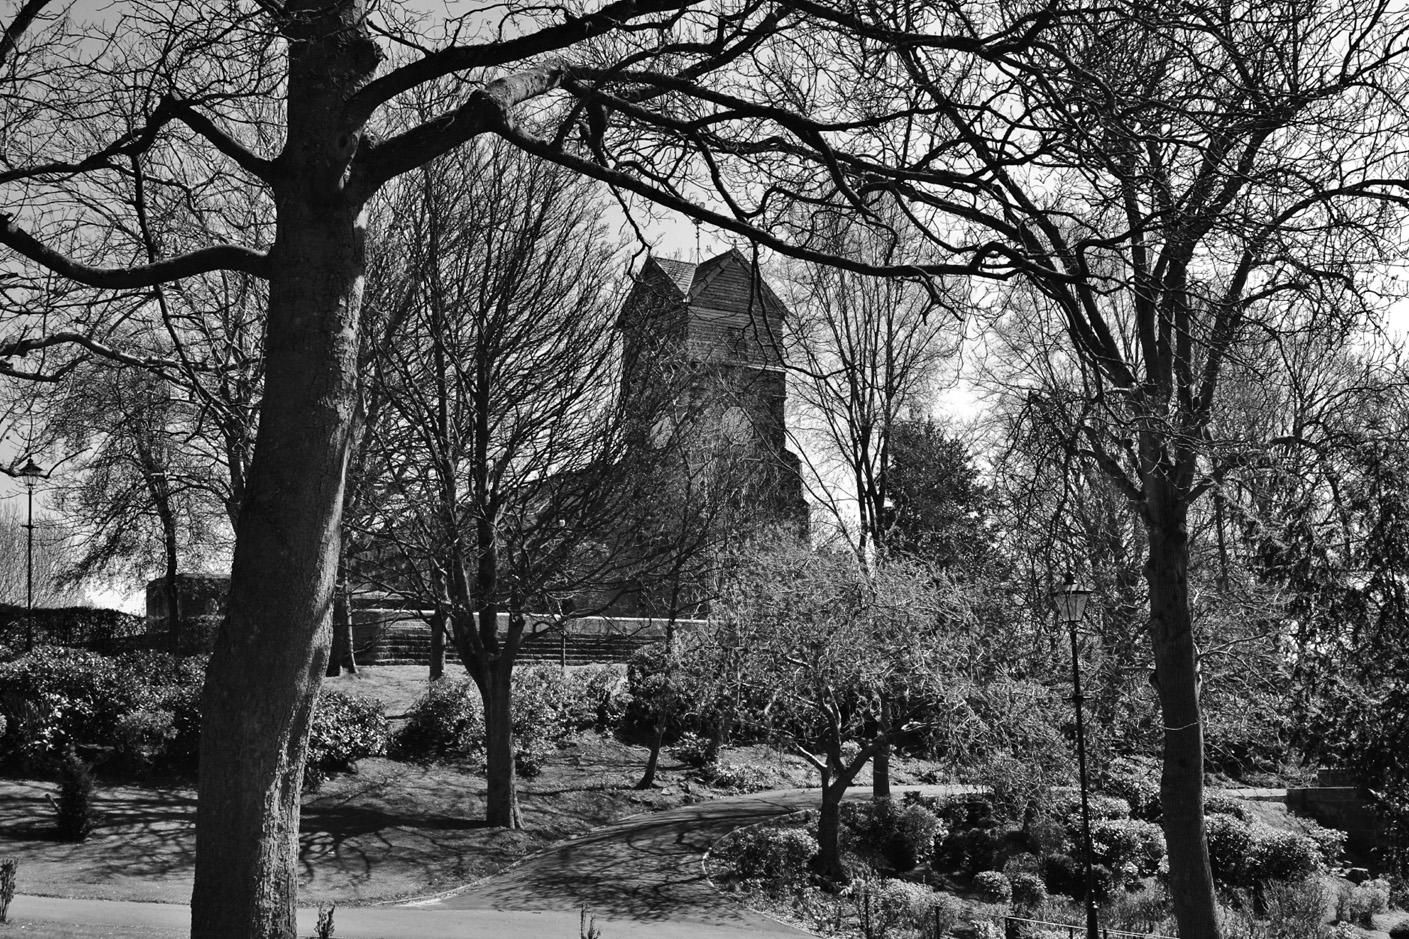 St Leonard's from Jubilee Park in black & white